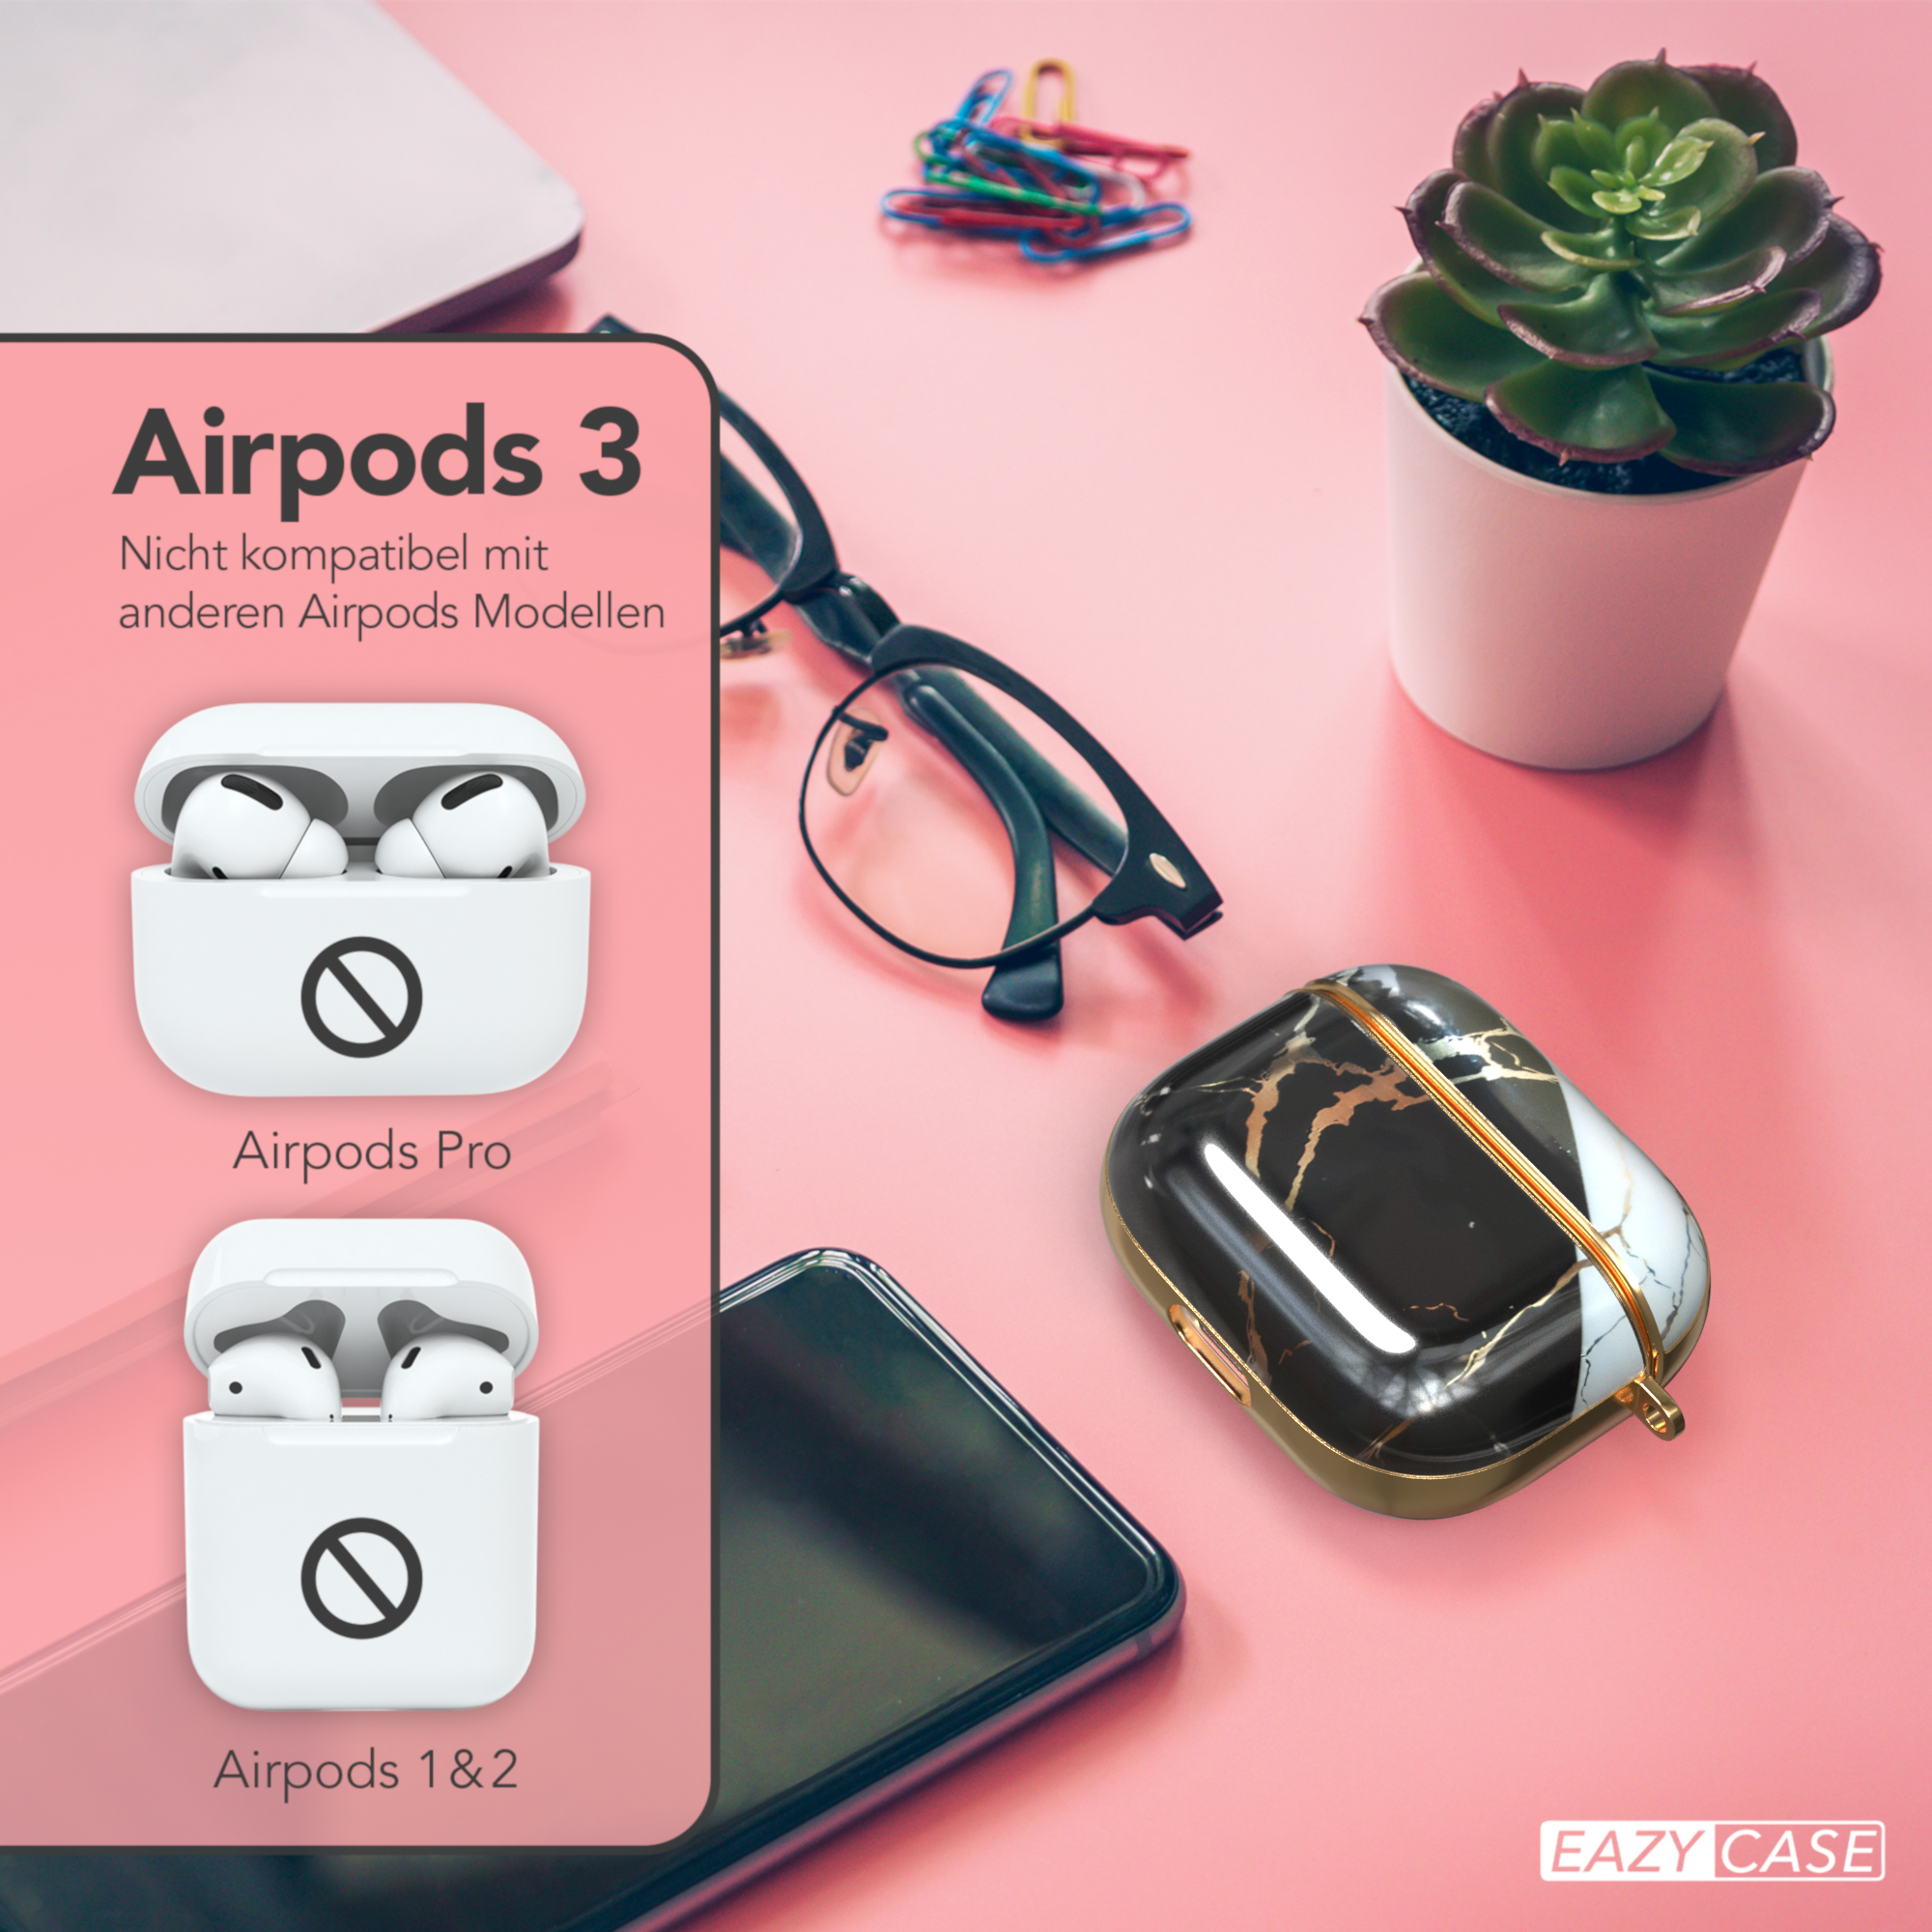 EAZY CASE AirPods 3 Apple IMD für: Sleeve Schutzhülle passend Motiv Gold Case Schwarz 